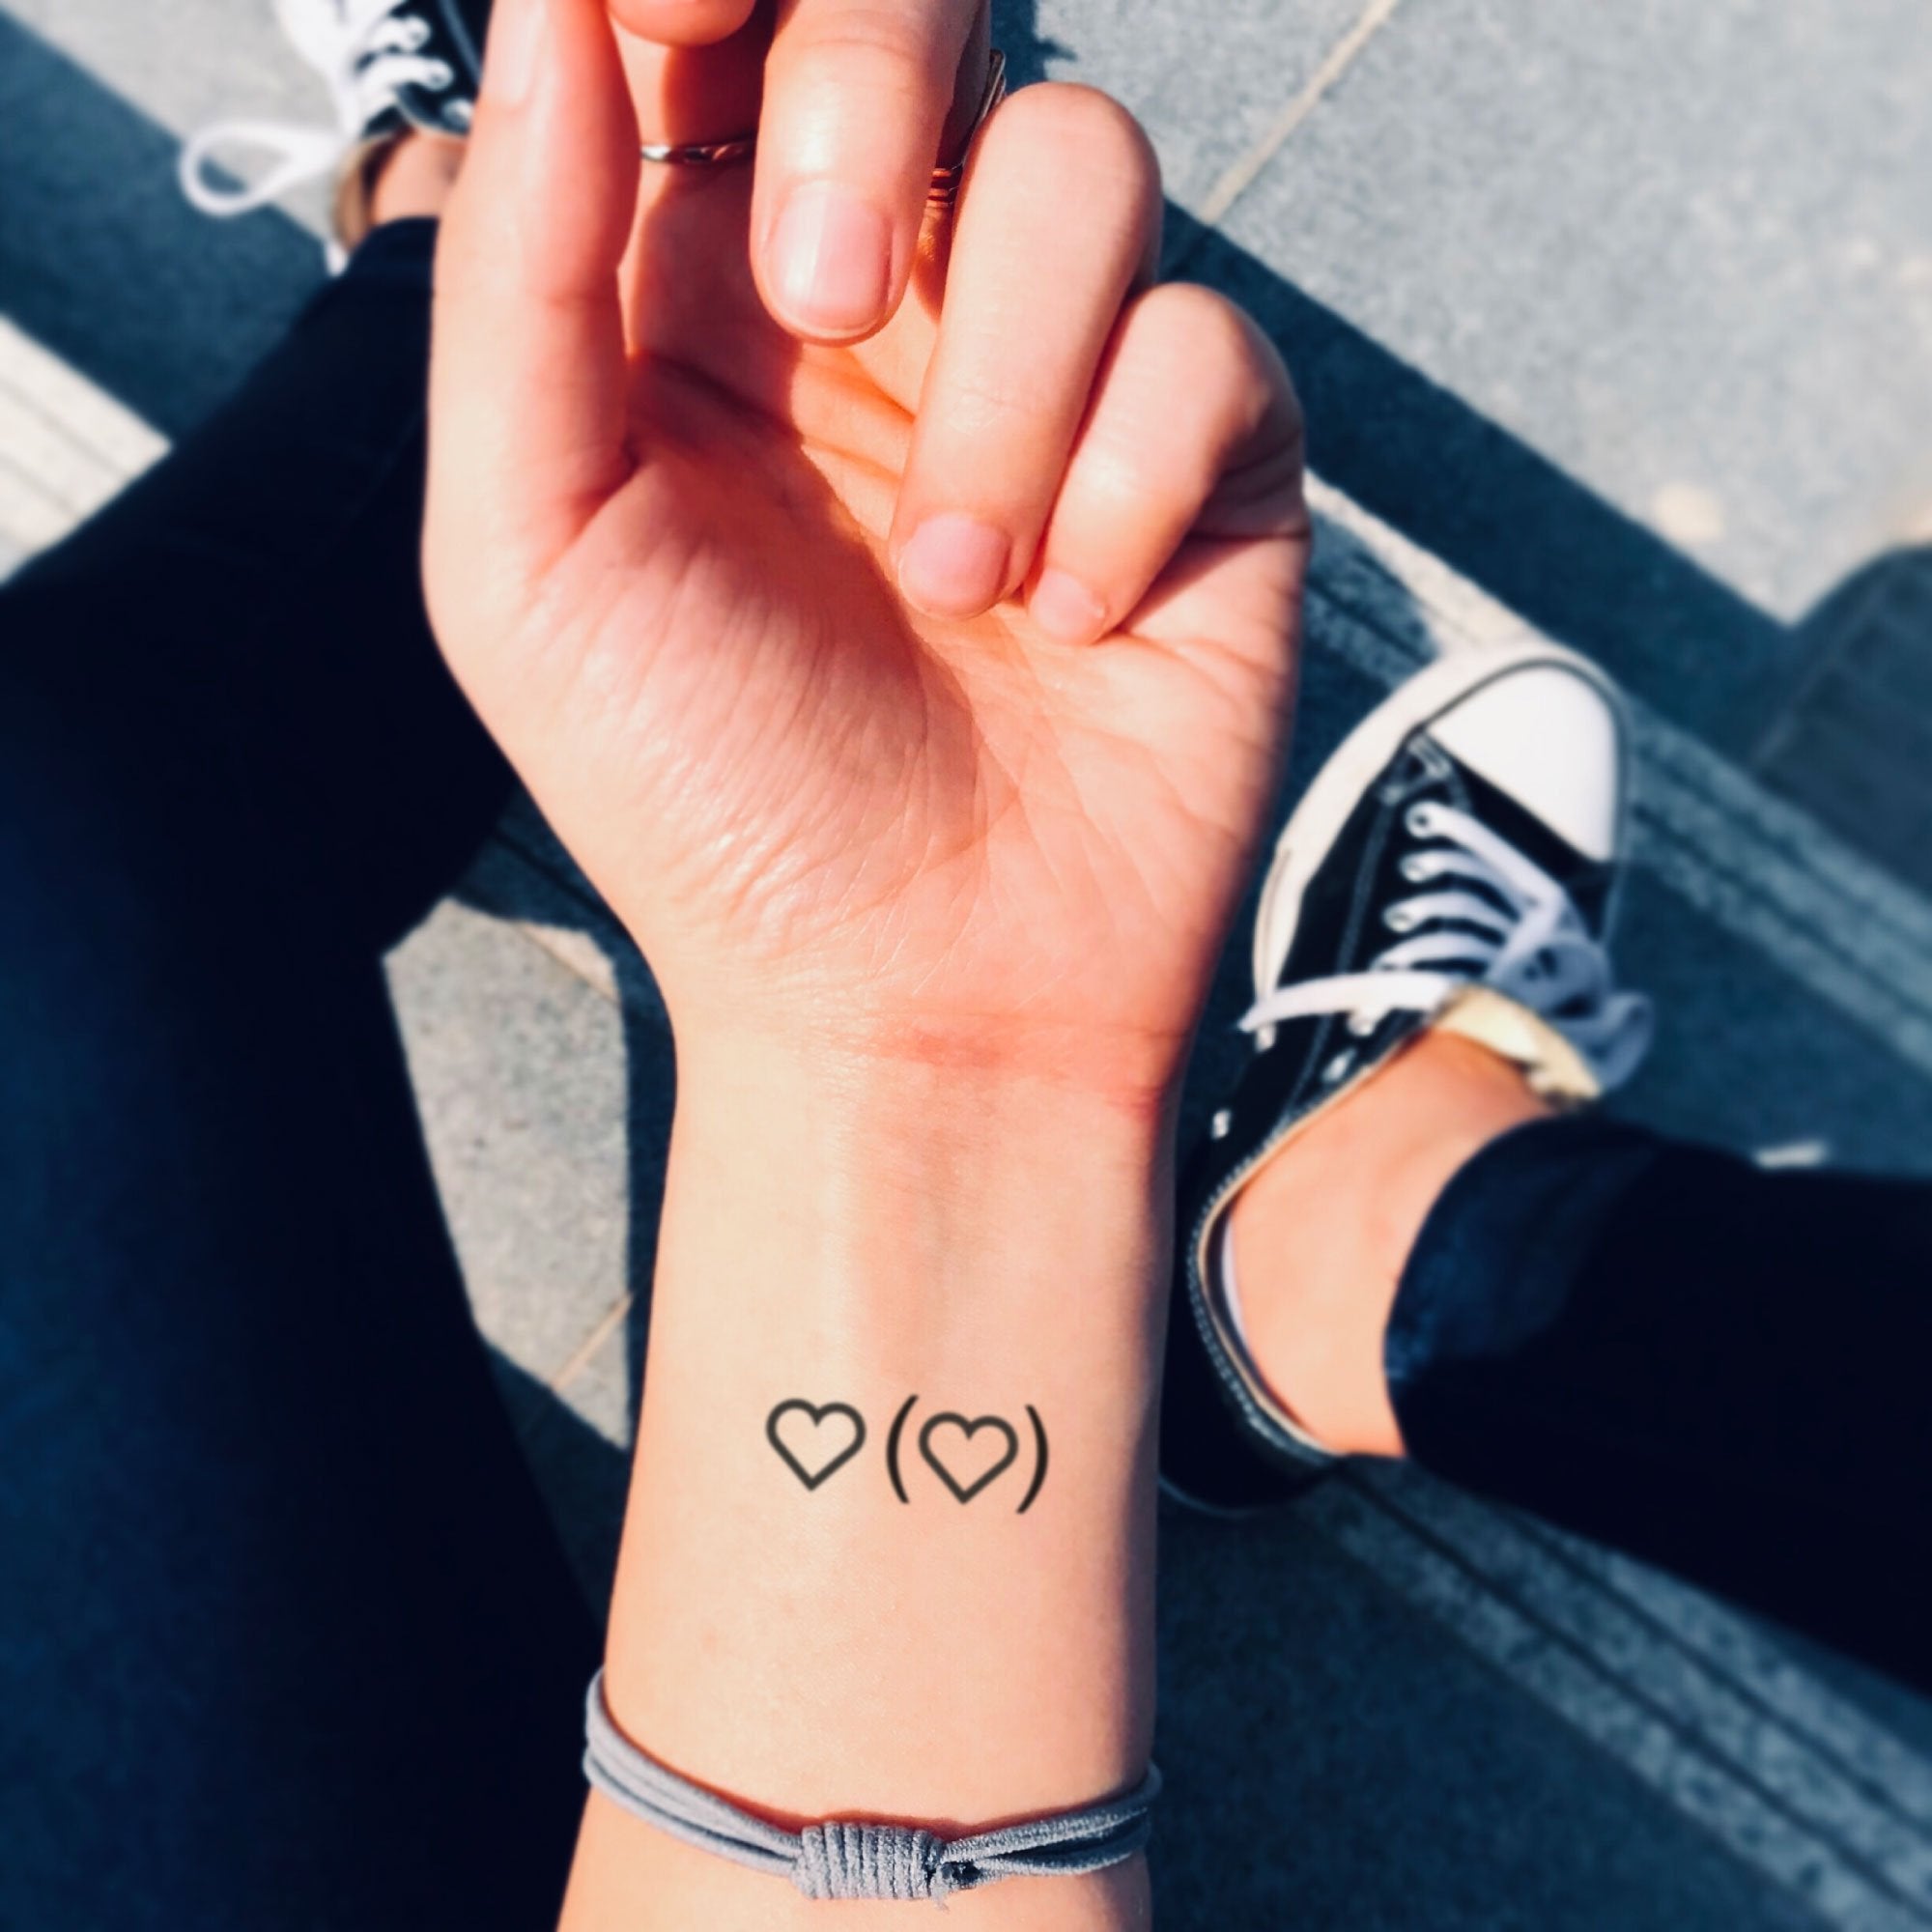 30 Small Wrist Tattoo Ideas | Small wrist tattoos, Cute tattoos on wrist, Wrist  tattoos